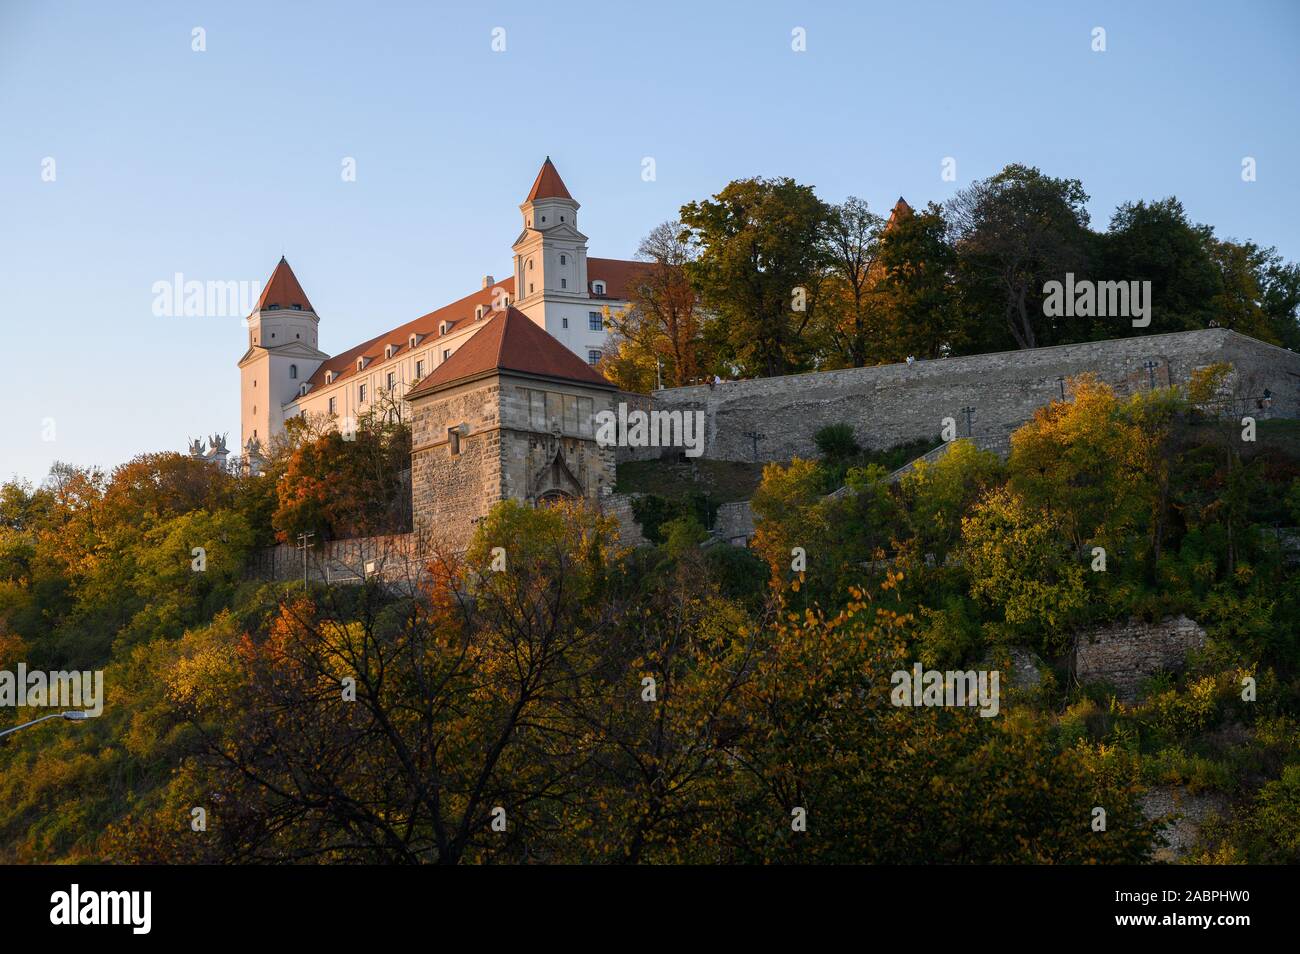 Bratislava, Slovacchia. 2019/10/21. Una vista del castello di Bratislava. Foto Stock